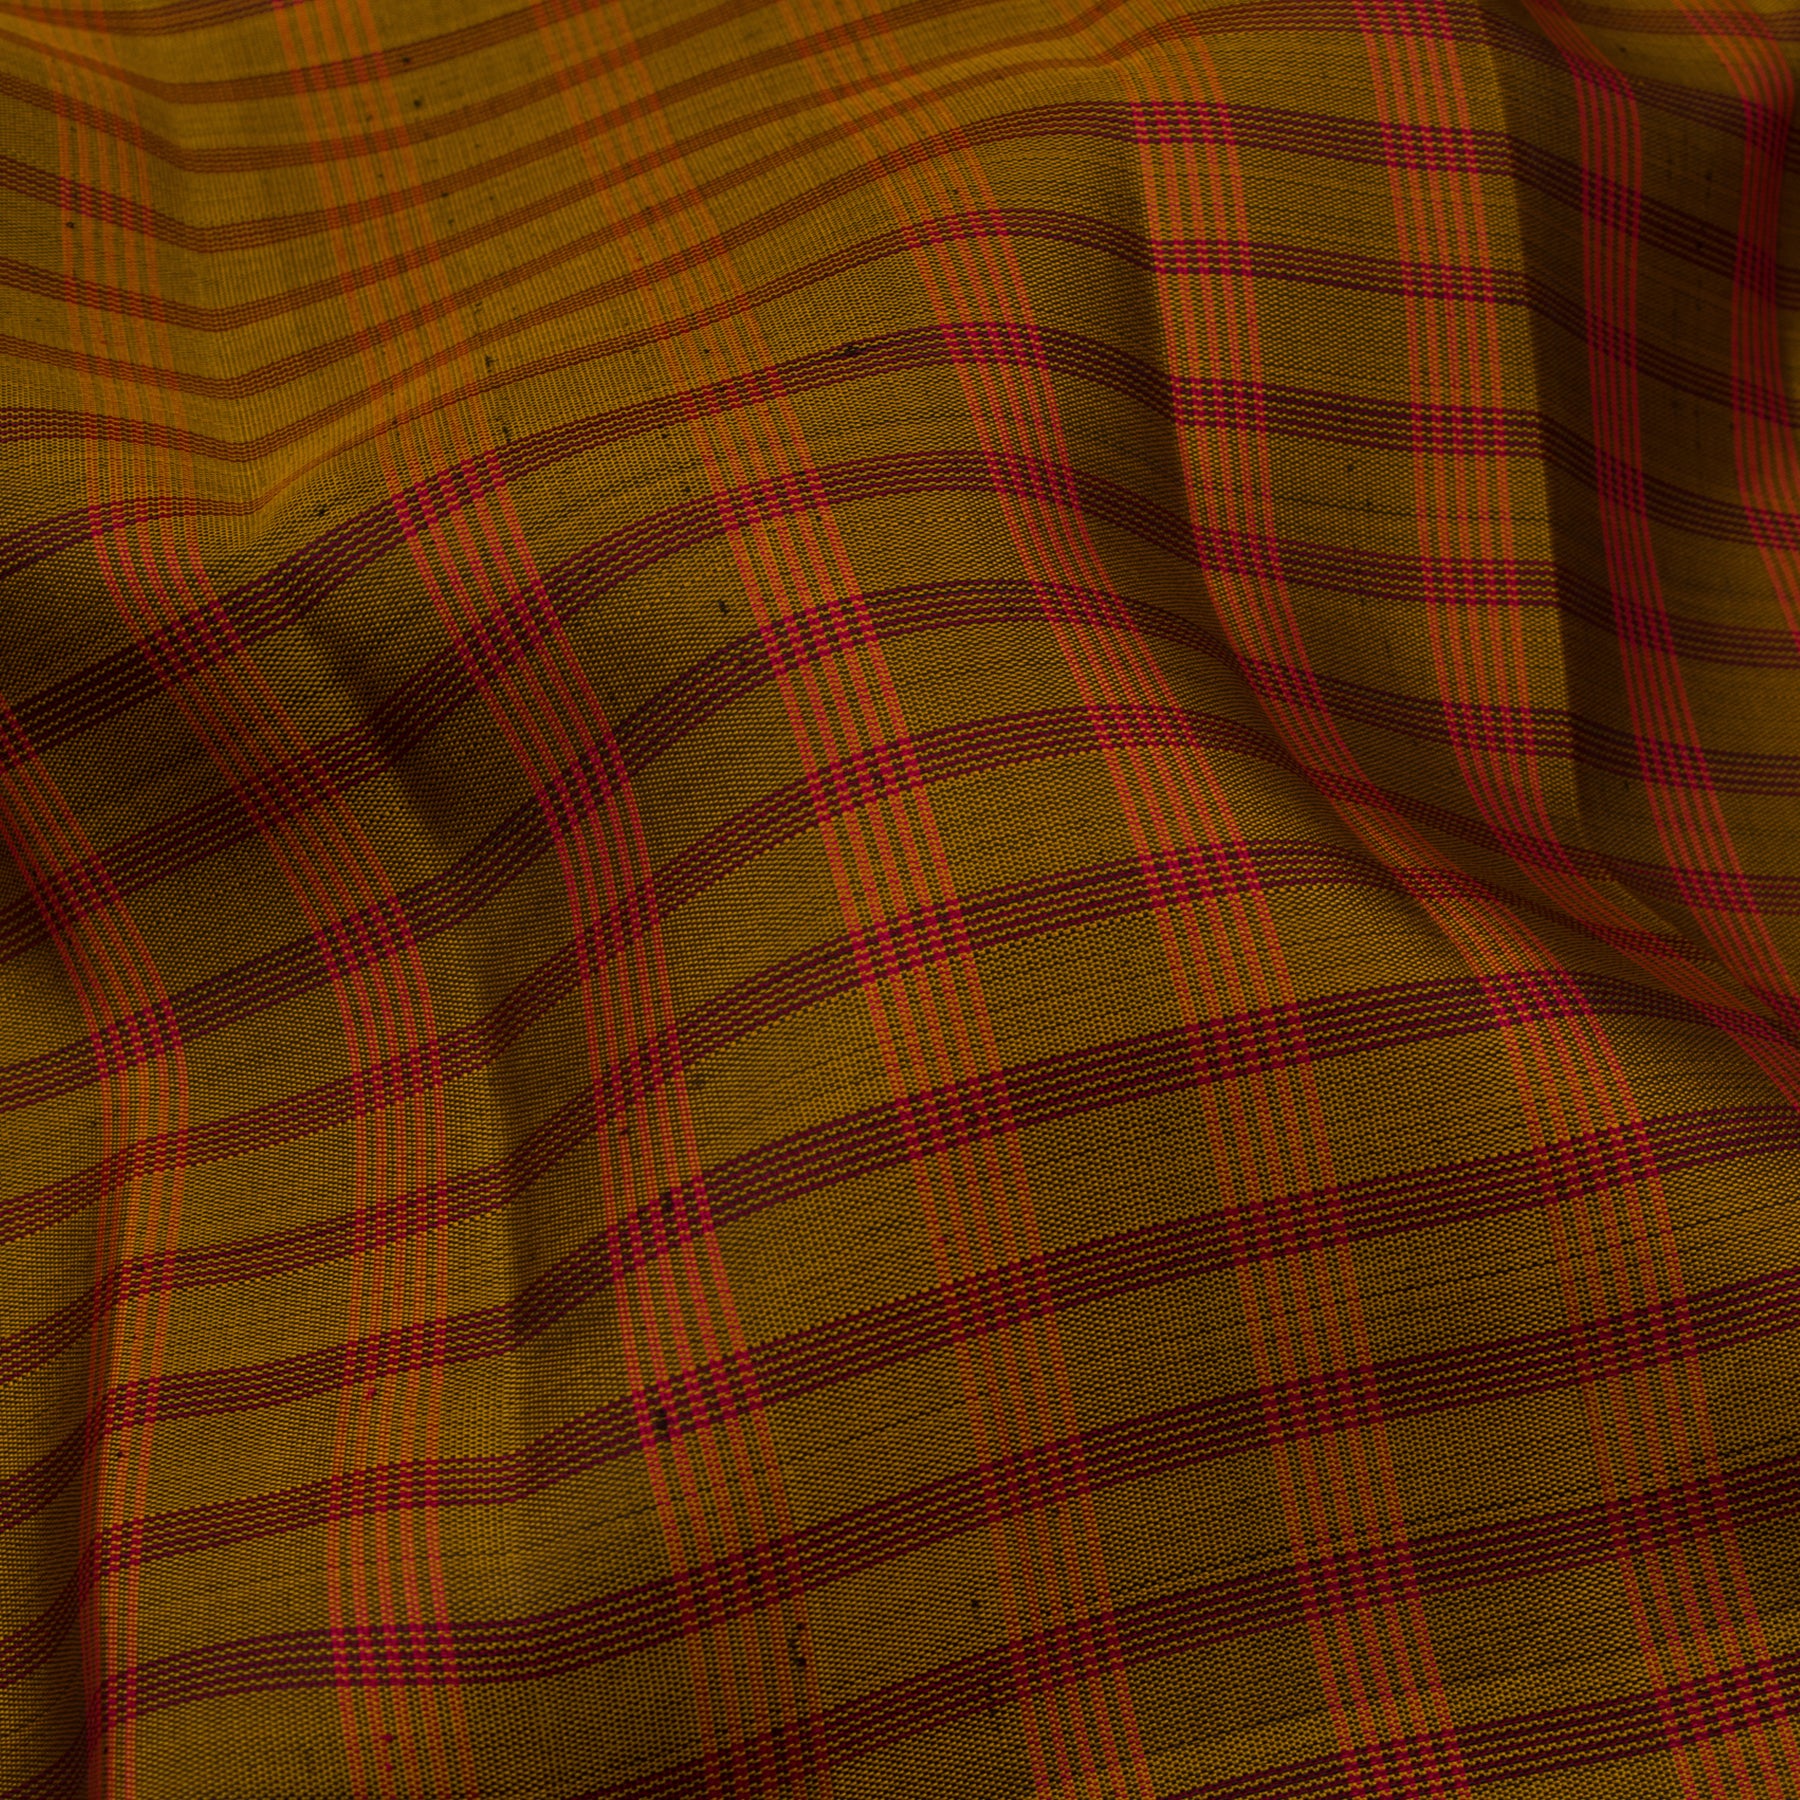 Kanakavalli Kanjivaram Silk Sari 22-595-HS001-14639 - Fabric View